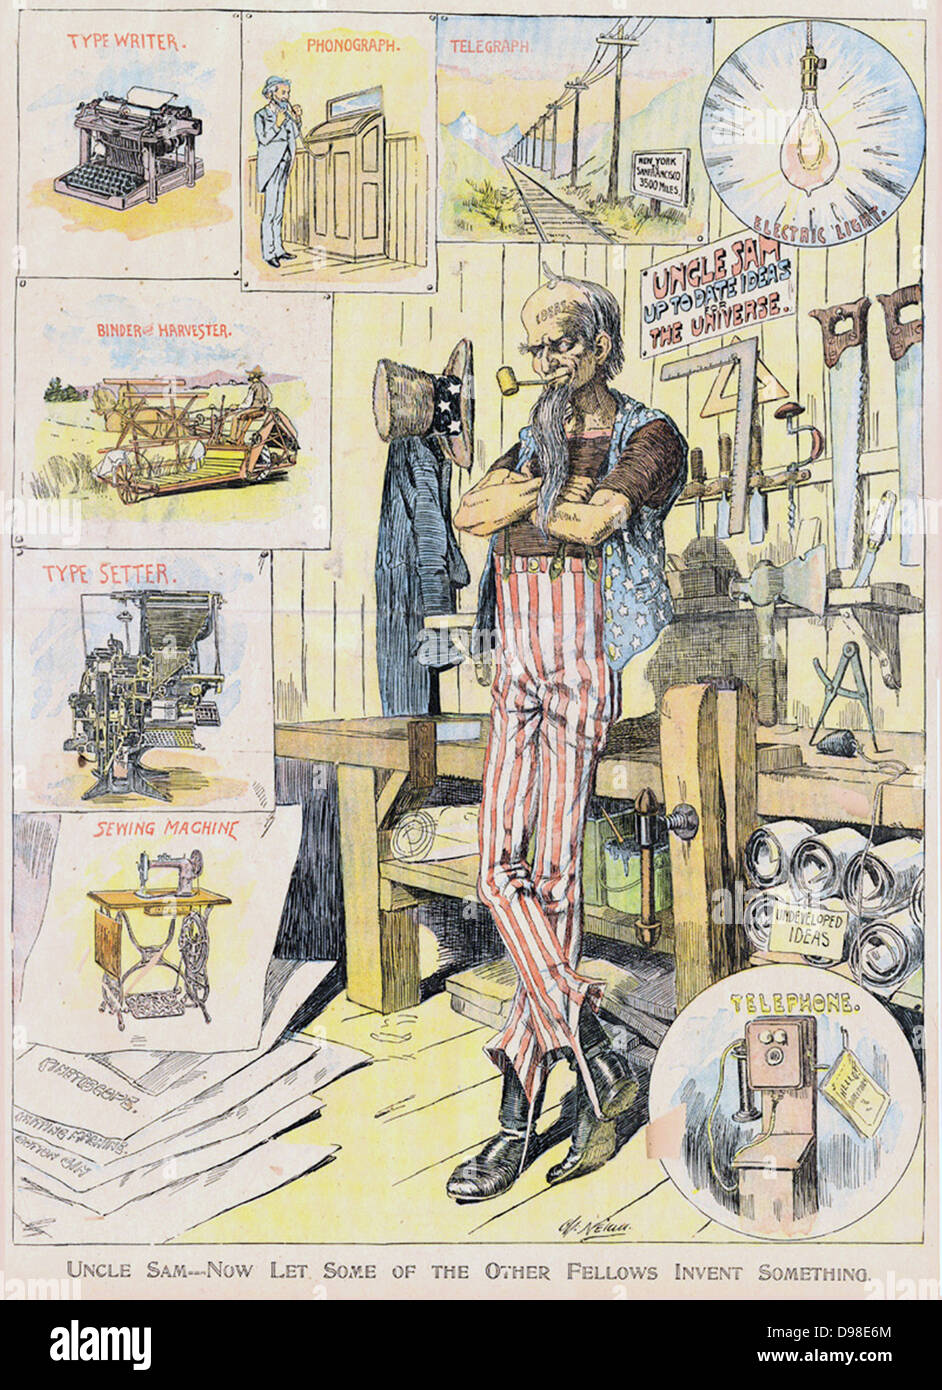 Uncle Sam - lassen Sie uns jetzt einige der anderen Fellows etwas erfinden": Cartoon von Charles Nelan (1858-1904) von der "New York Herald" vom 9. Januar 1898. . Uncle Sam in Werkstatt, mit Schreibmaschine, Plattenspieler, Reaper, Telegraph, Telefon, etc. umgeben Stockfoto